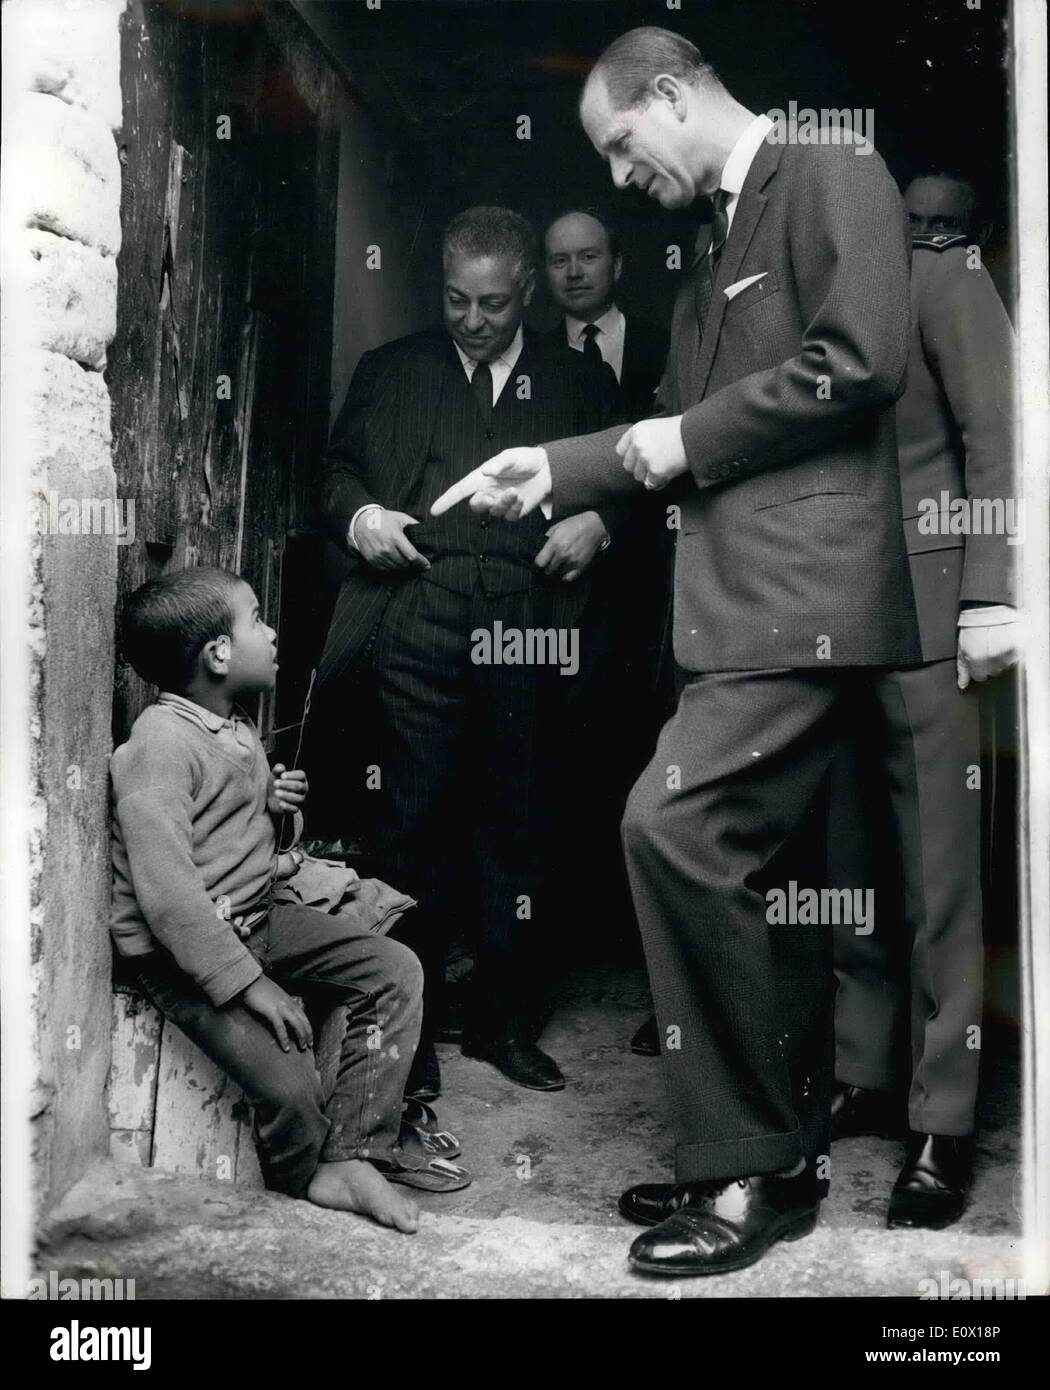 12 déc., 1964 - le prince Philip sur deux au Maroc. La photo montre le prince Philip s'arrête pour discuter avec un peu garçon marocain lorsqu'il a été présenté dans le revenu médian du marché à Rabat, au cours de sa visite officielle de quatre jours à Moracco. Banque D'Images